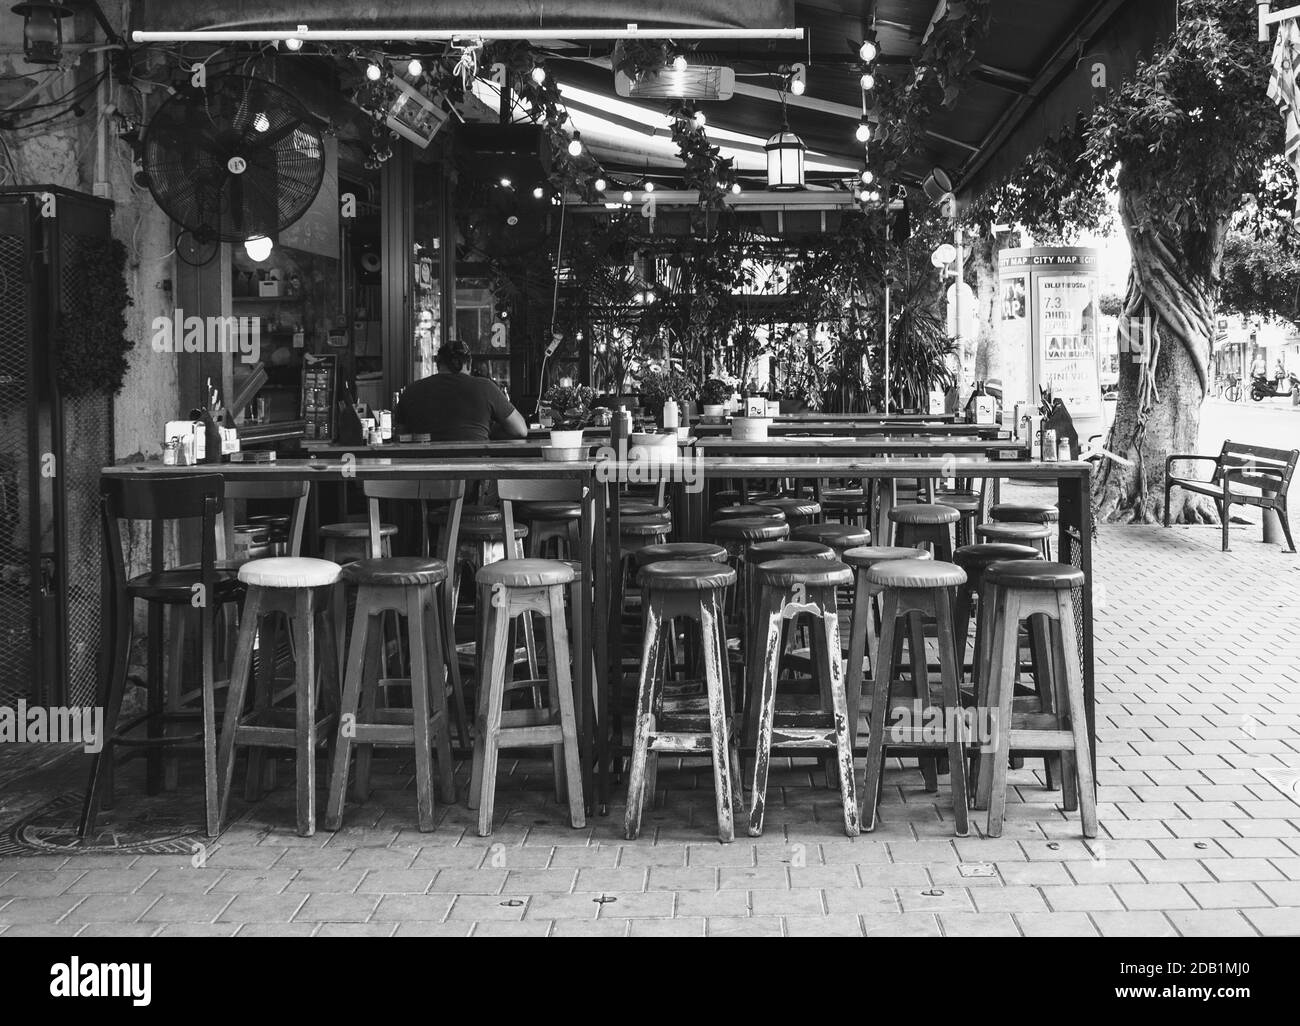 TEL AVIV-JAFFA, ISRAEL - 6. MÄRZ 2019: Leere Außenterrasse der typischen lokalen Street Food Restaurant Bar in der Dizengoff Street. Schwarzweißfoto. Stockfoto